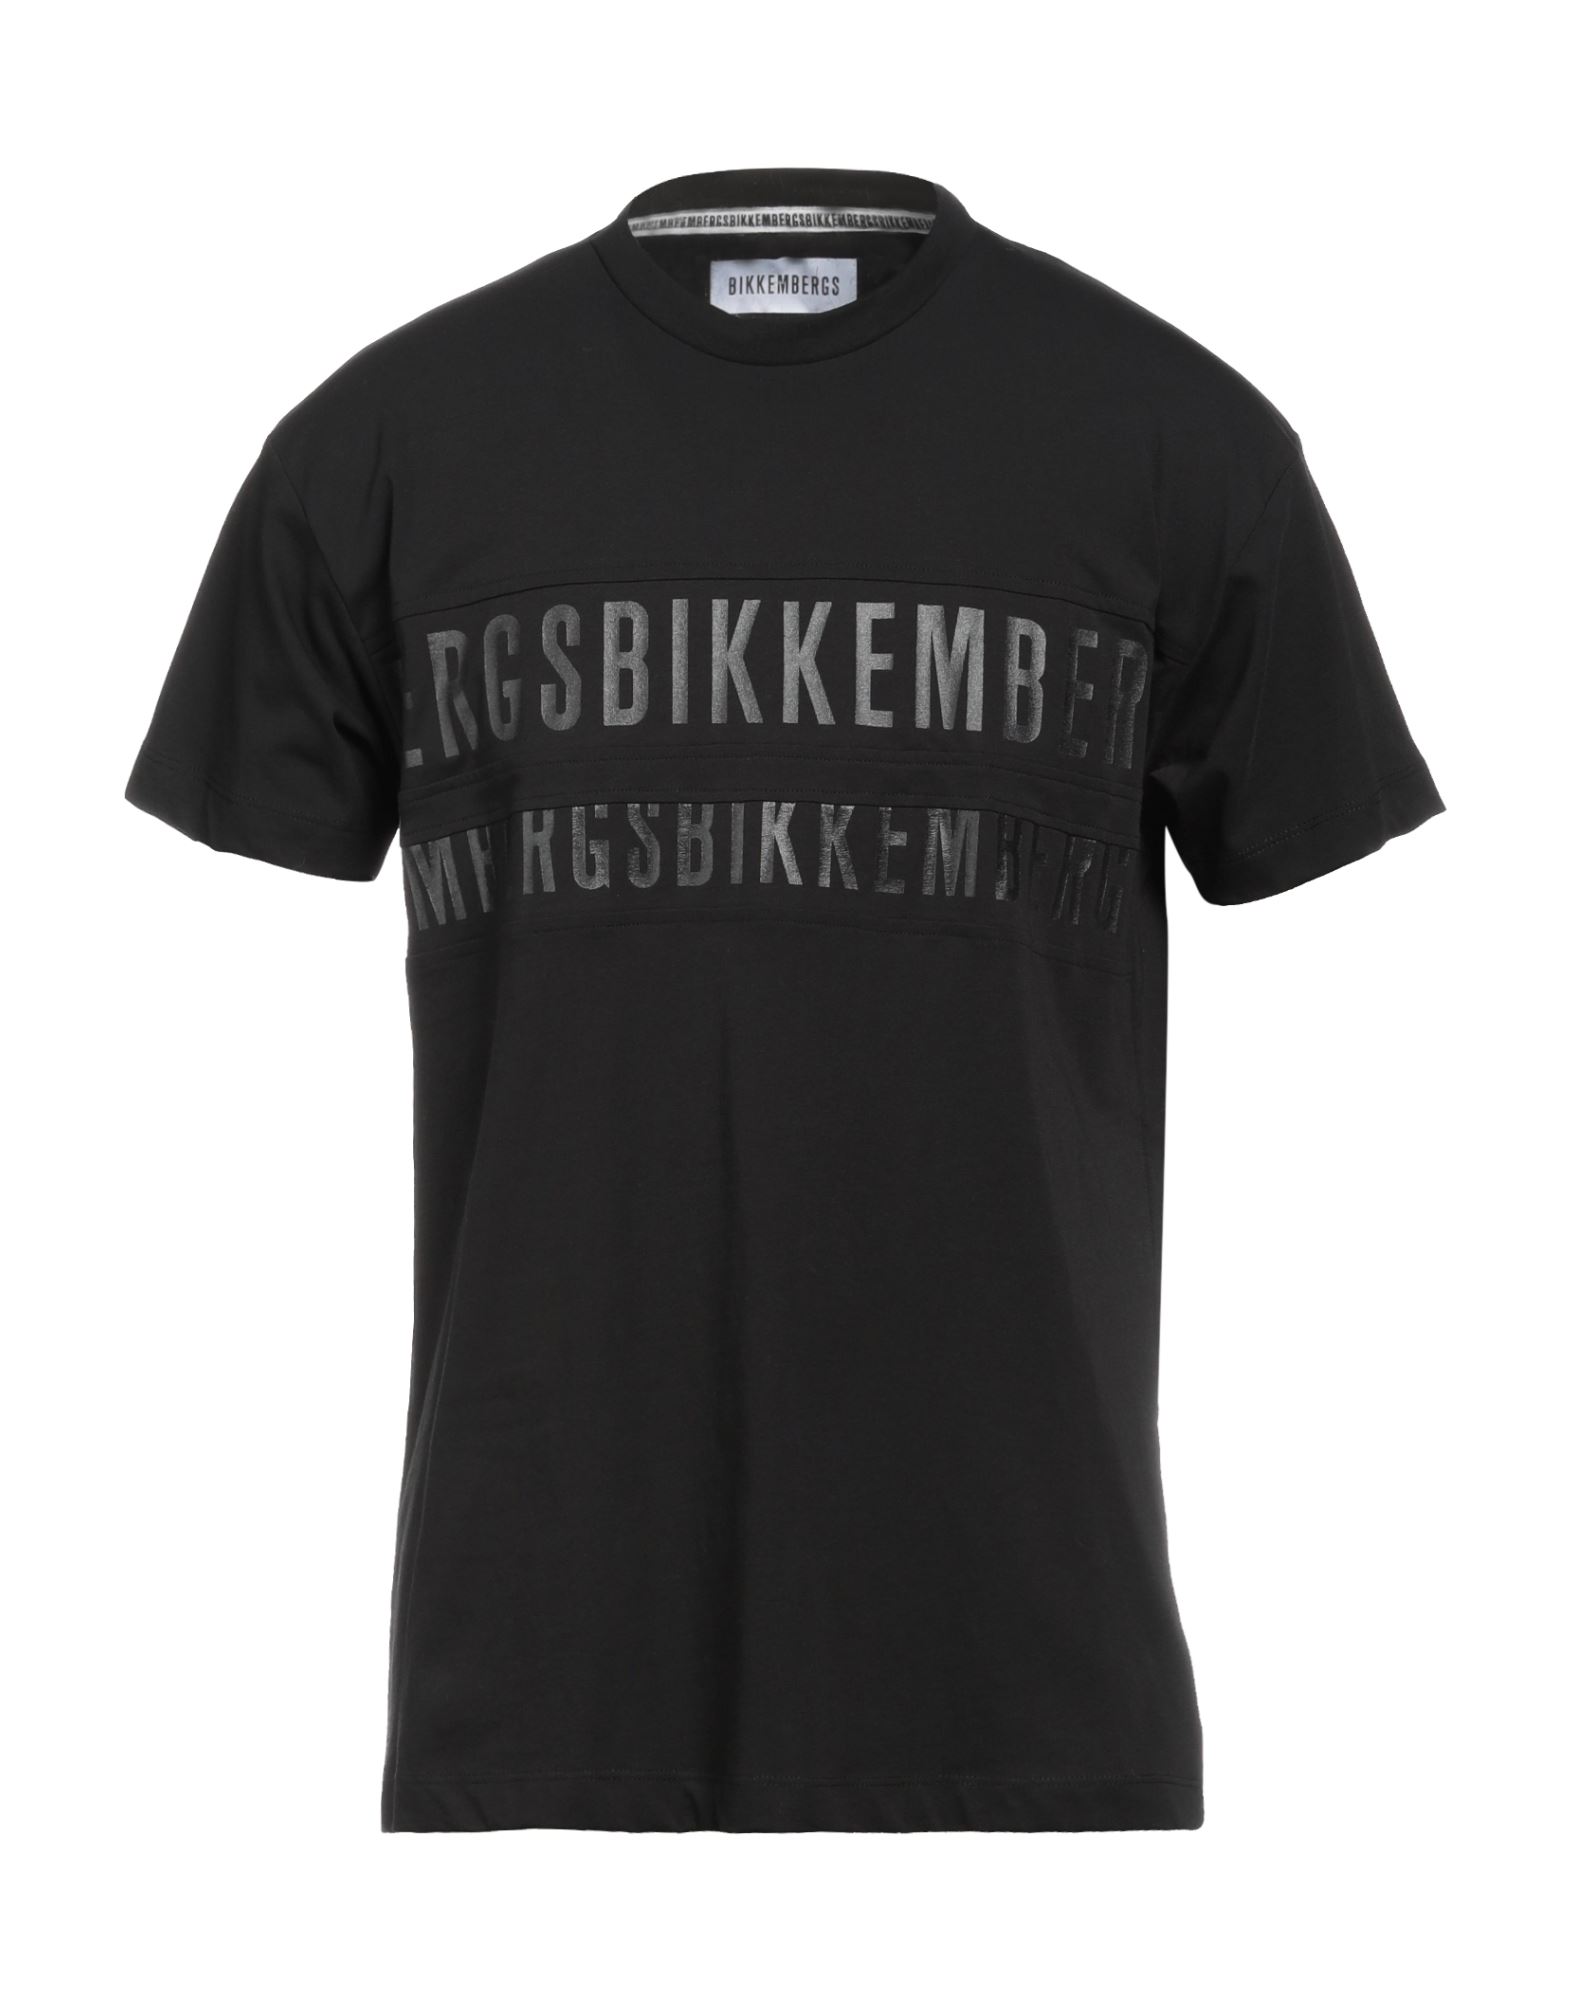 BIKKEMBERGS T-shirts Herren Schwarz von BIKKEMBERGS